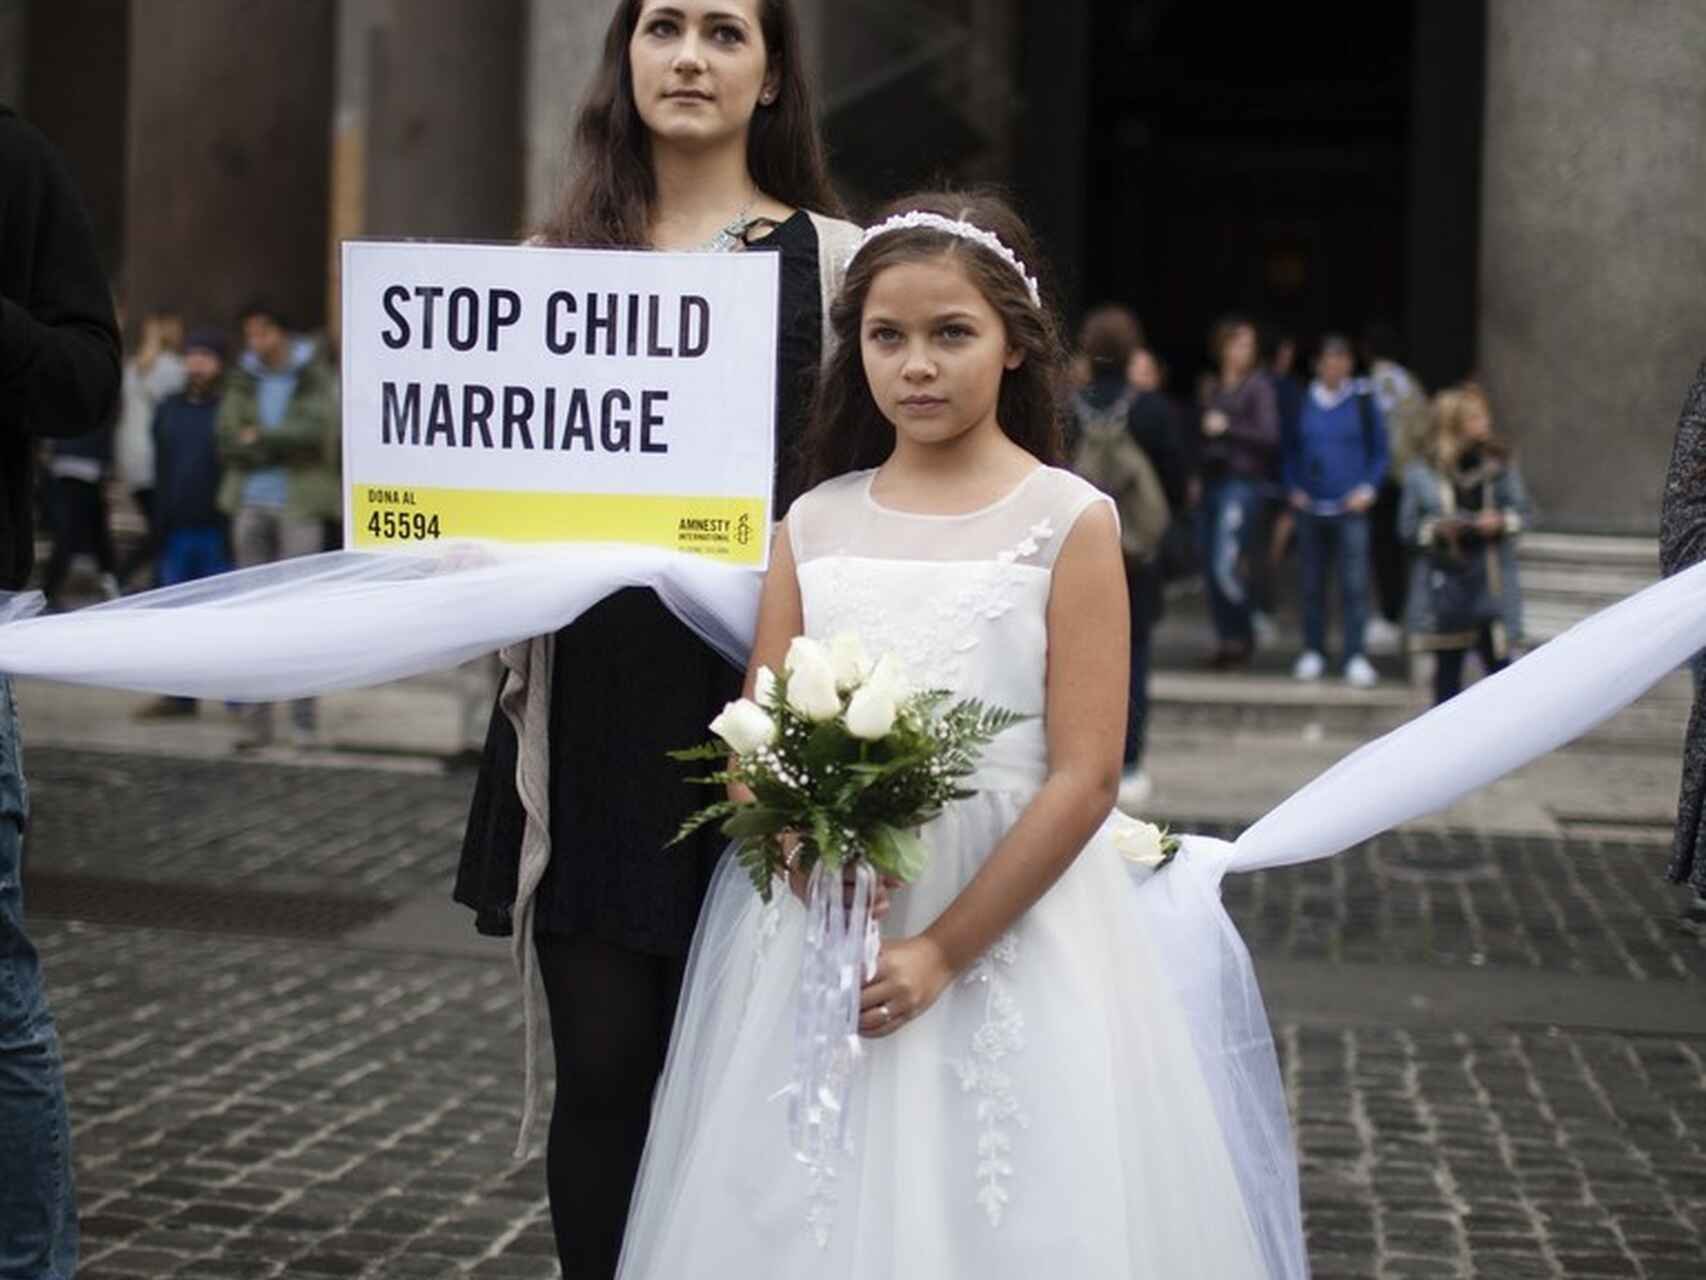 La batalla contra el matrimonio infantil en EEUU: cuando violar niñas es  legal